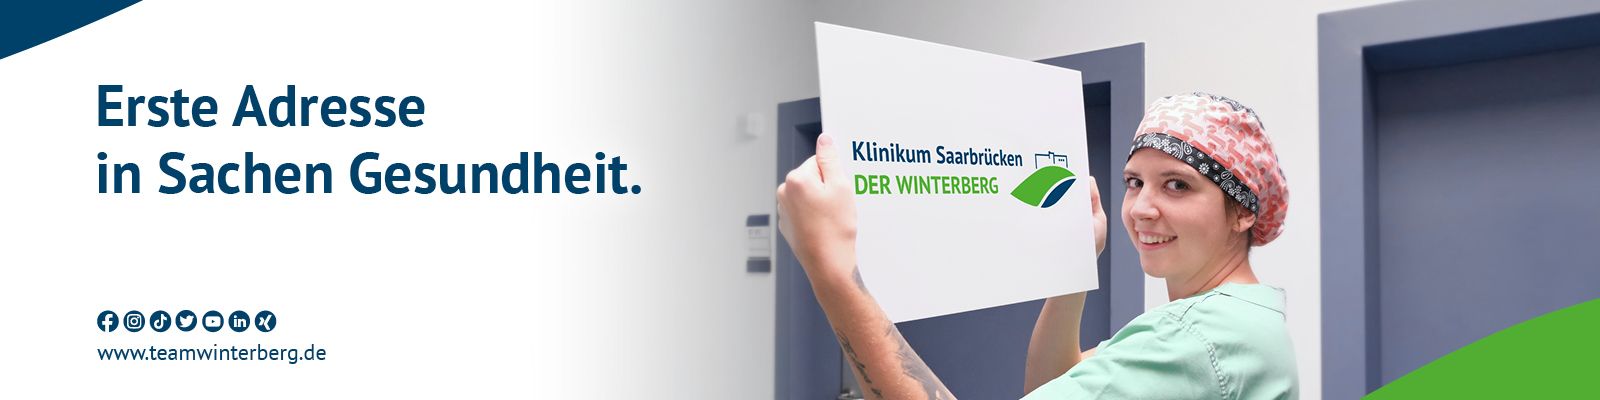 Klinikum Saarbrücken - Mitarbeiter als Markenbotschafter Der_Winterberg_Marke.jpg